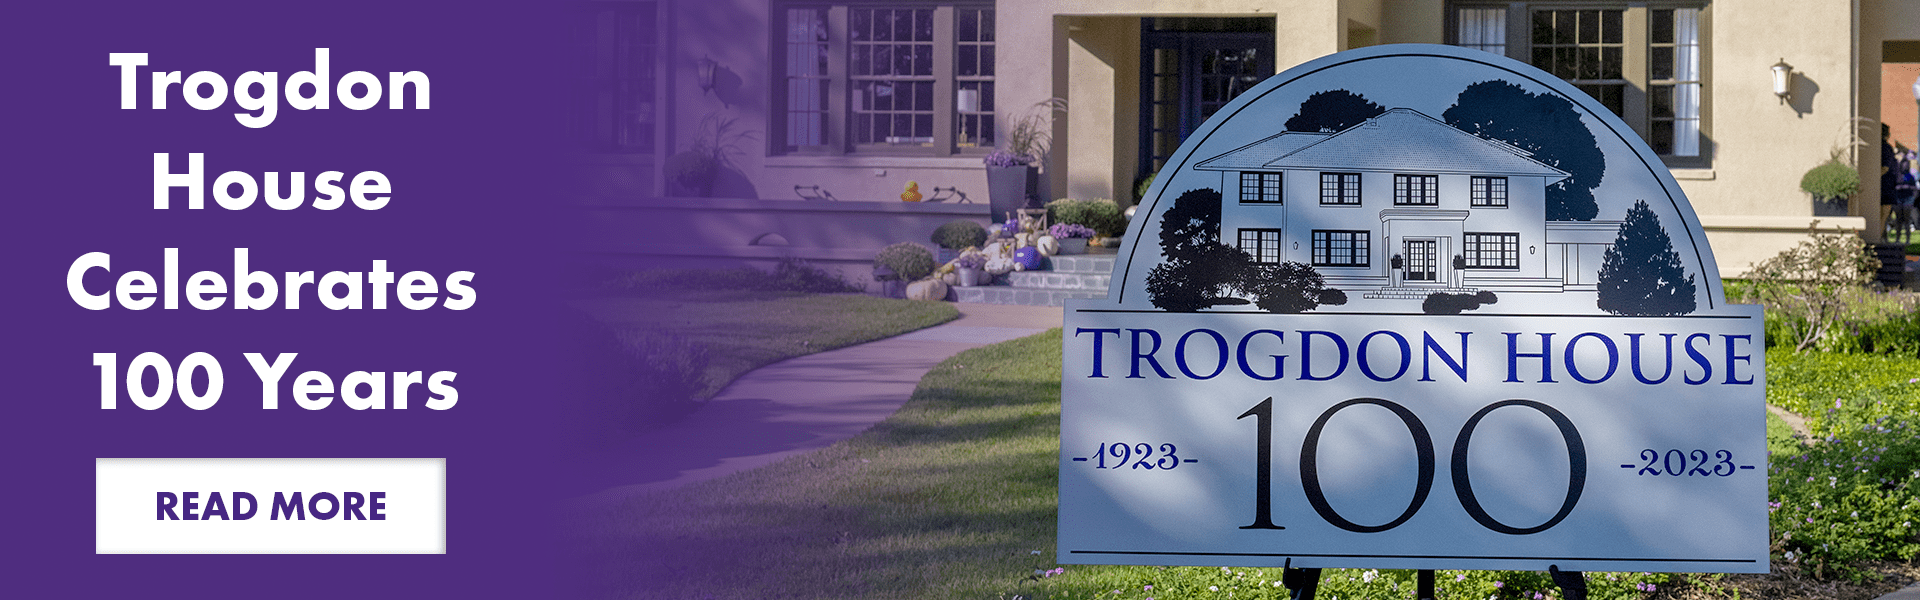 Trogdon House Celebrates 100 Years